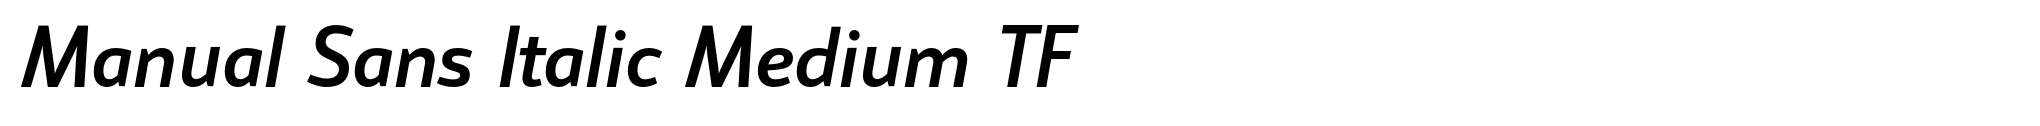 Manual Sans Italic Medium TF image